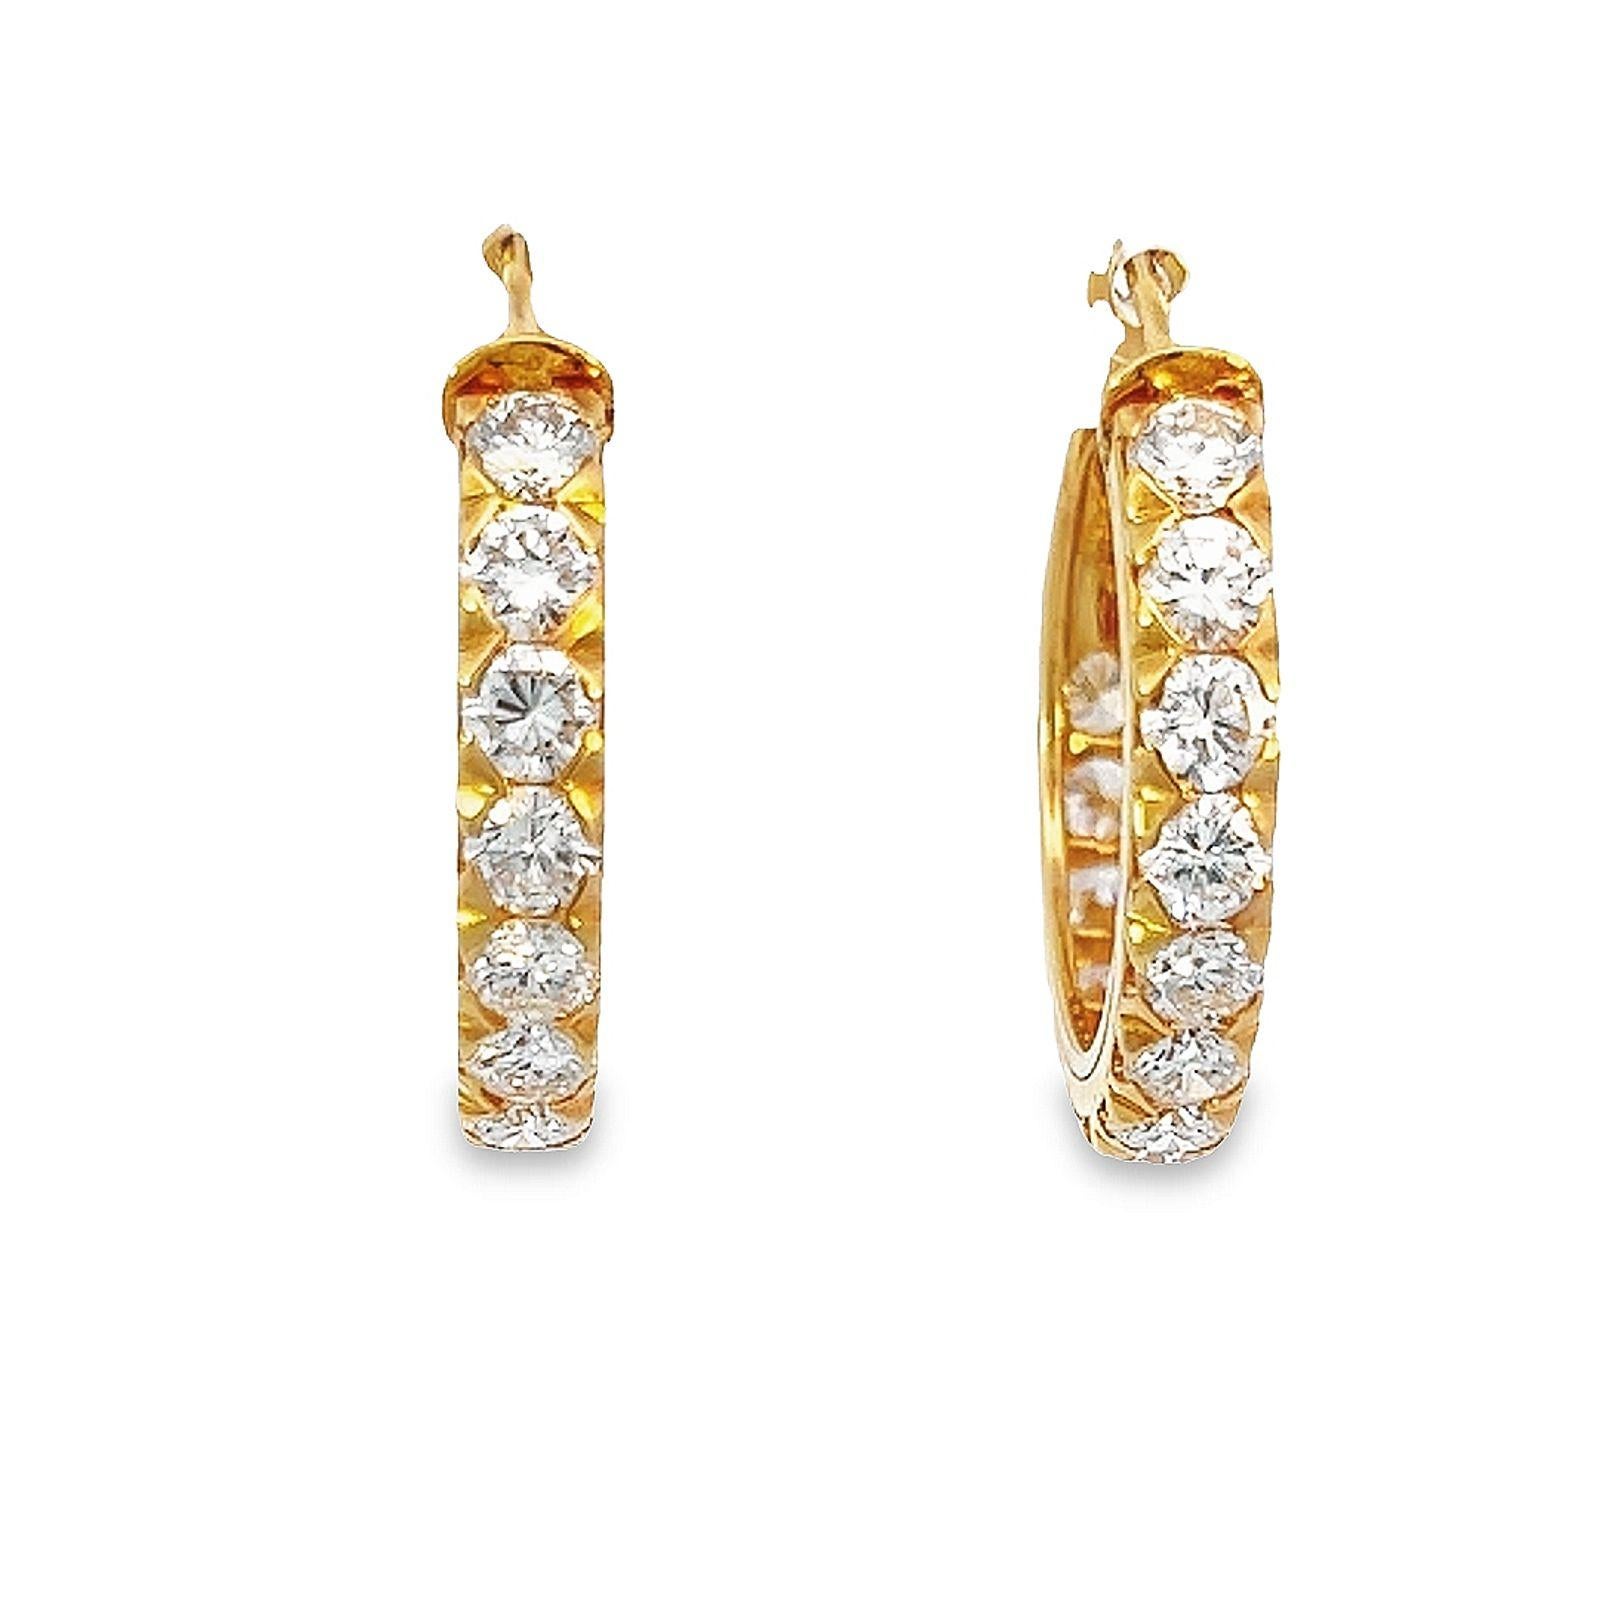 Die Oscar Heyman Diamantohrringe aus 18 Karat Gelbgold bestehen aus 4 Karat runden Diamanten im Brillantschliff, Farbe G/H und Reinheit VS. Diese schillernden Edelsteine bestechen durch ihr Funkeln und ihre Reinheit, die sie zu einer idealen Wahl